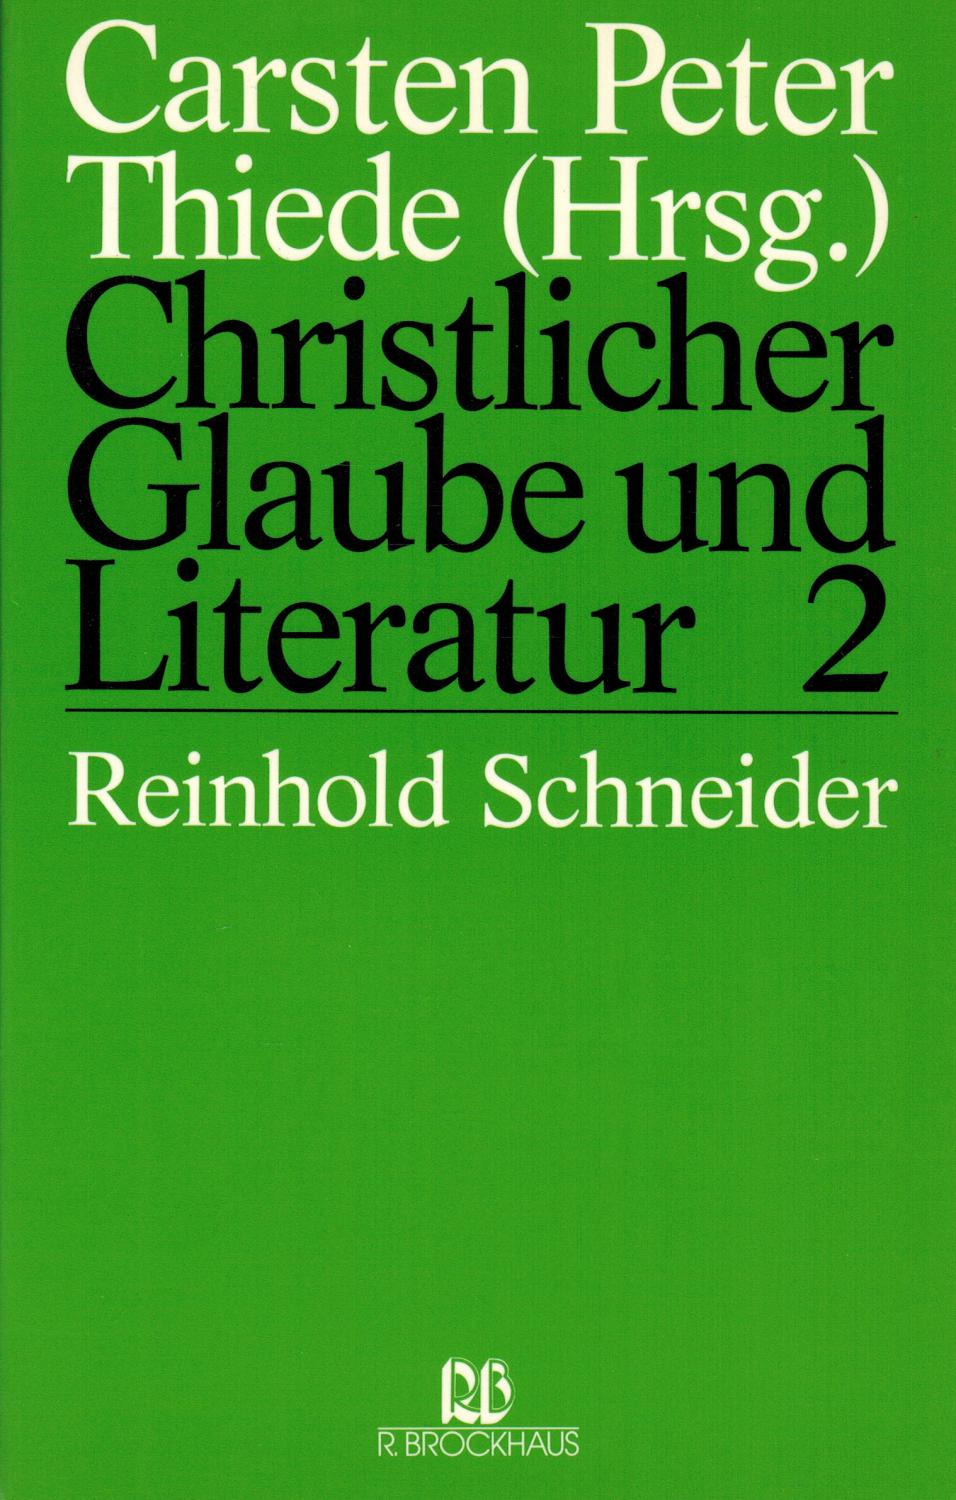 Christlicher Glaube und Literatur: Reinhold Schneider